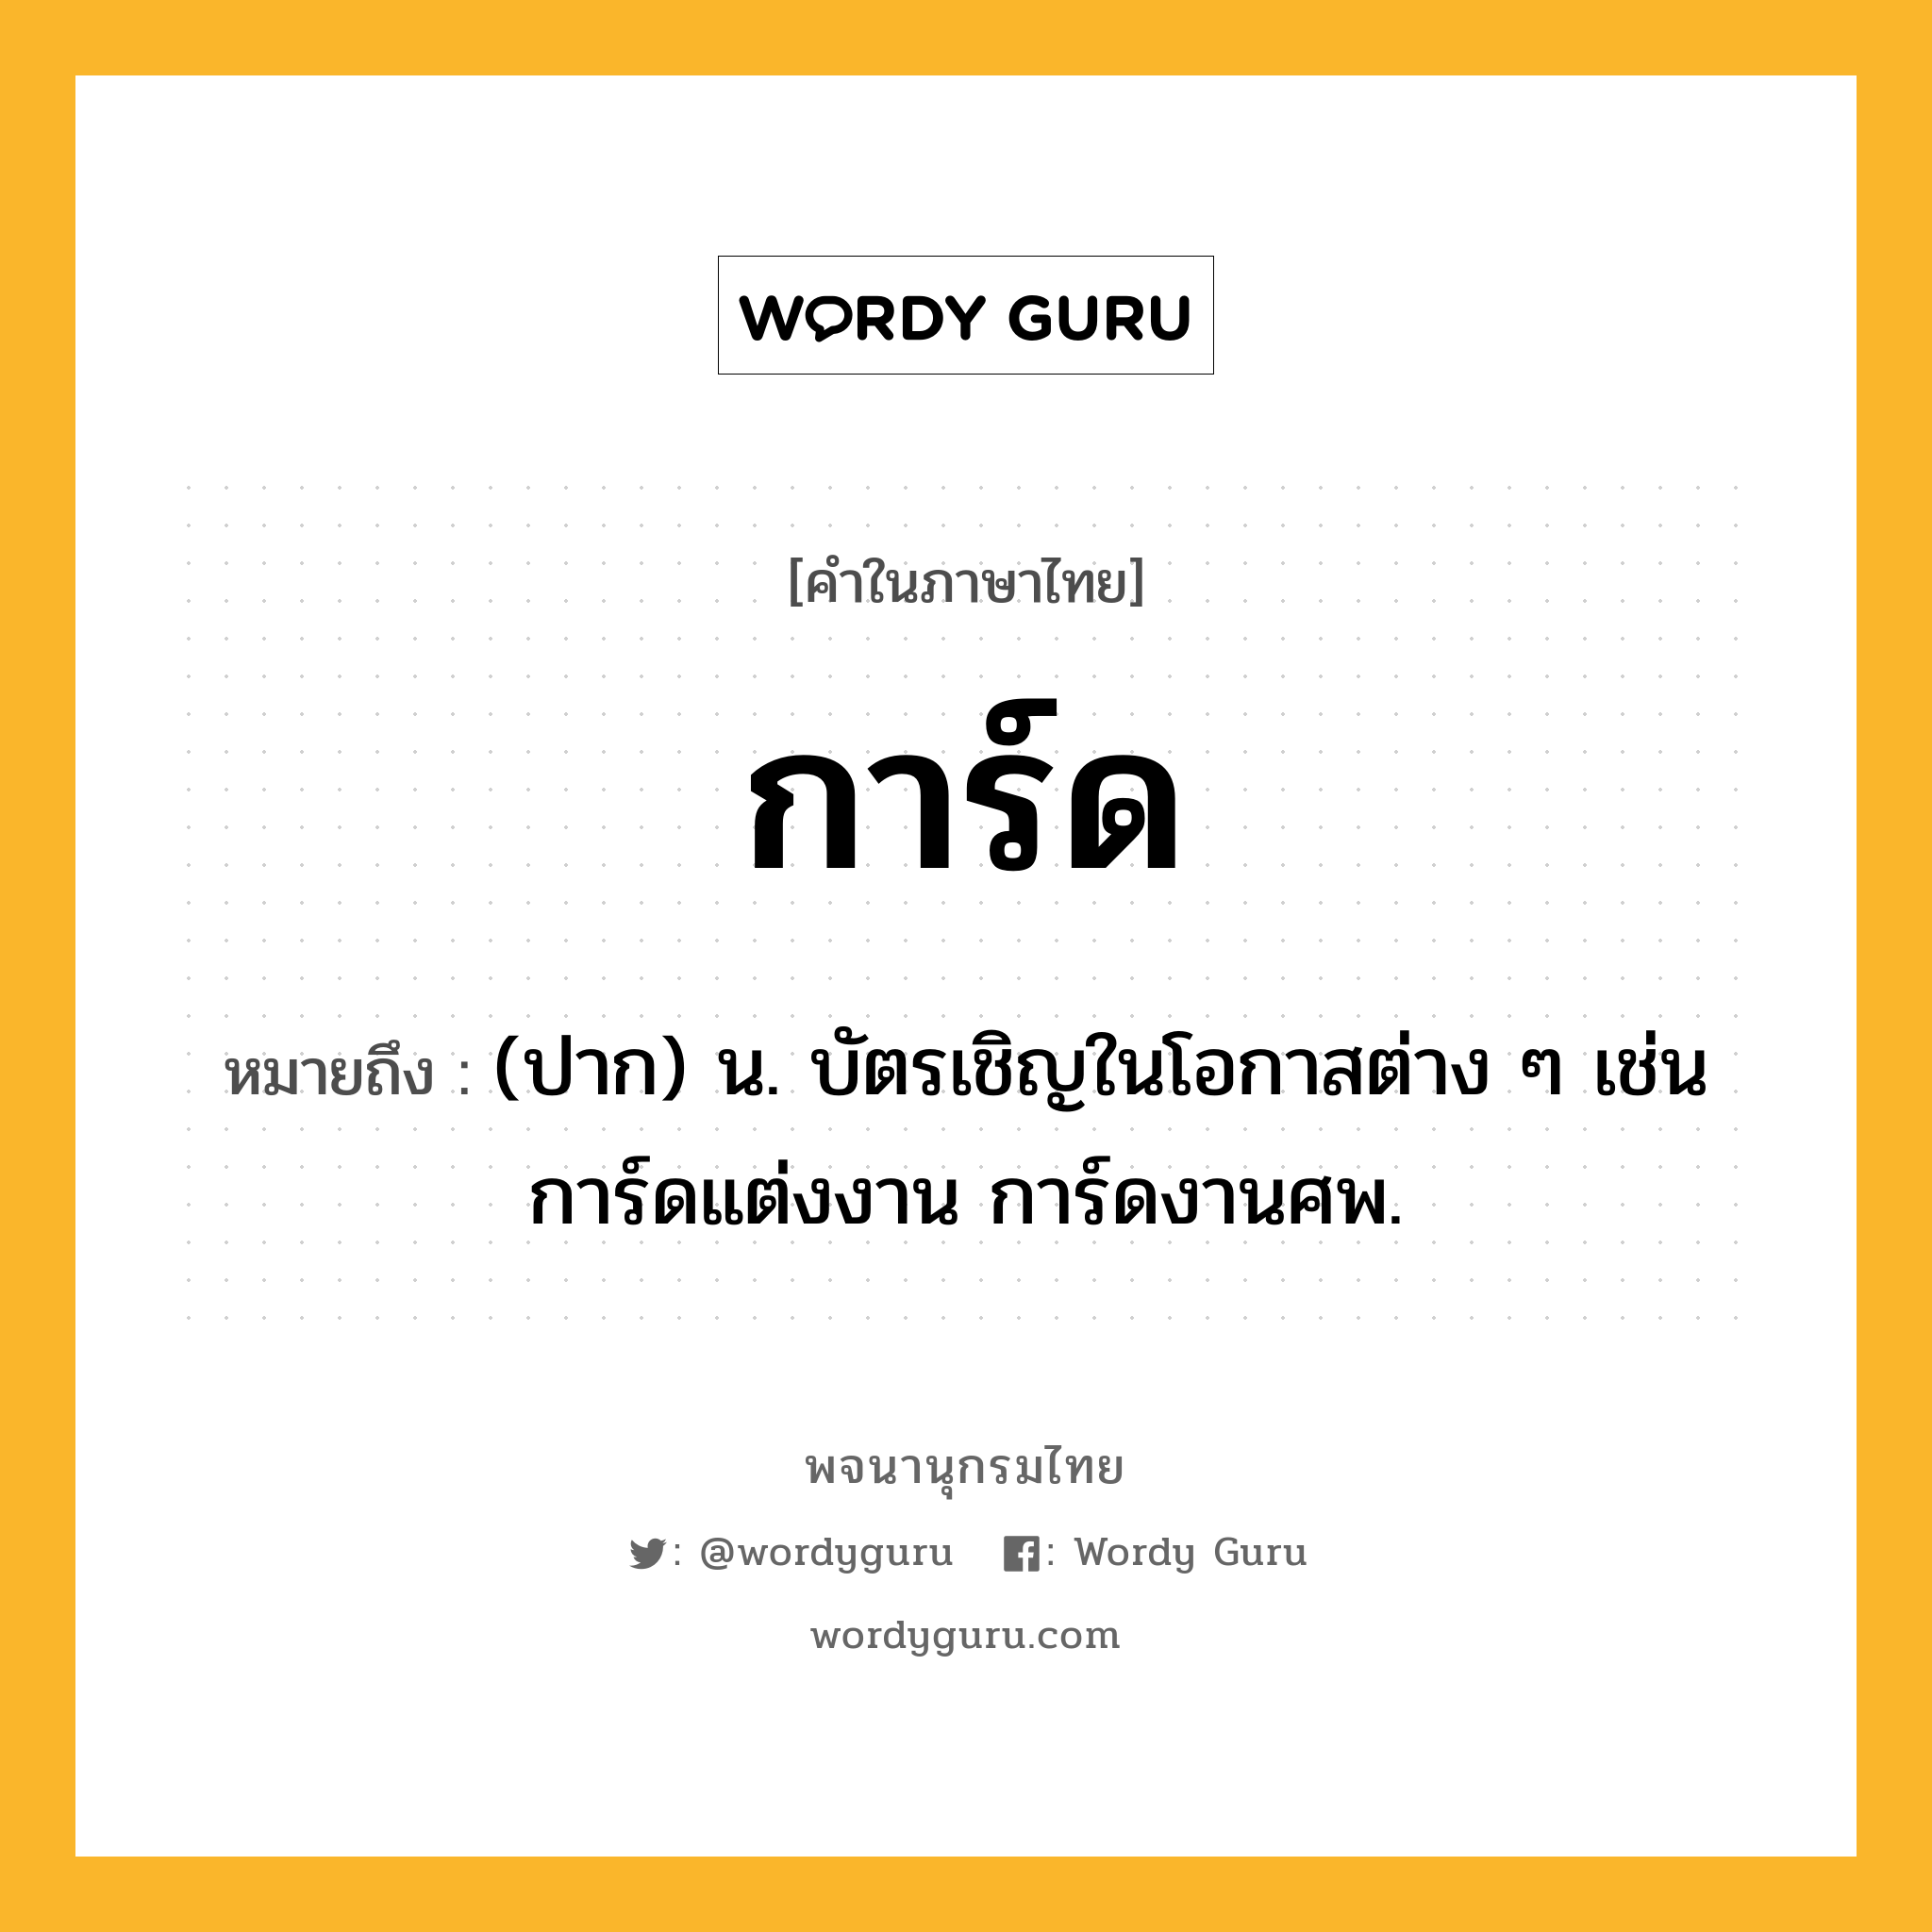 การ์ด ความหมาย หมายถึงอะไร?, คำในภาษาไทย การ์ด หมายถึง (ปาก) น. บัตรเชิญในโอกาสต่าง ๆ เช่น การ์ดแต่งงาน การ์ดงานศพ.